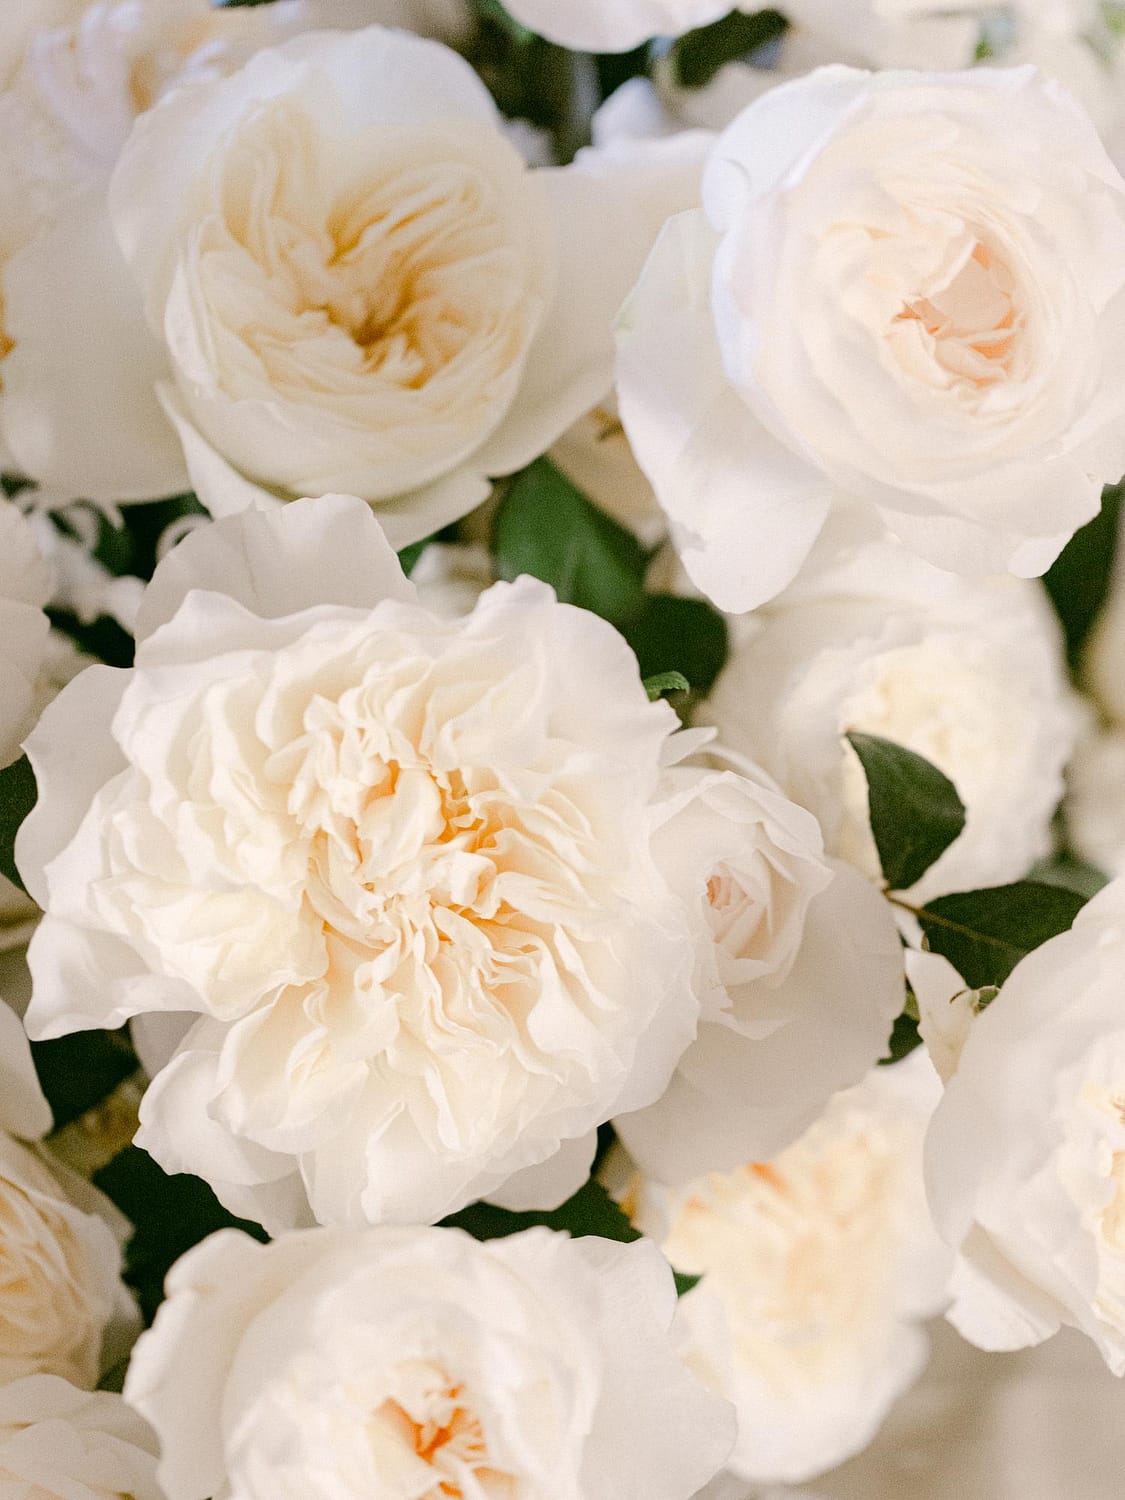 زهور الزفاف البيضاء